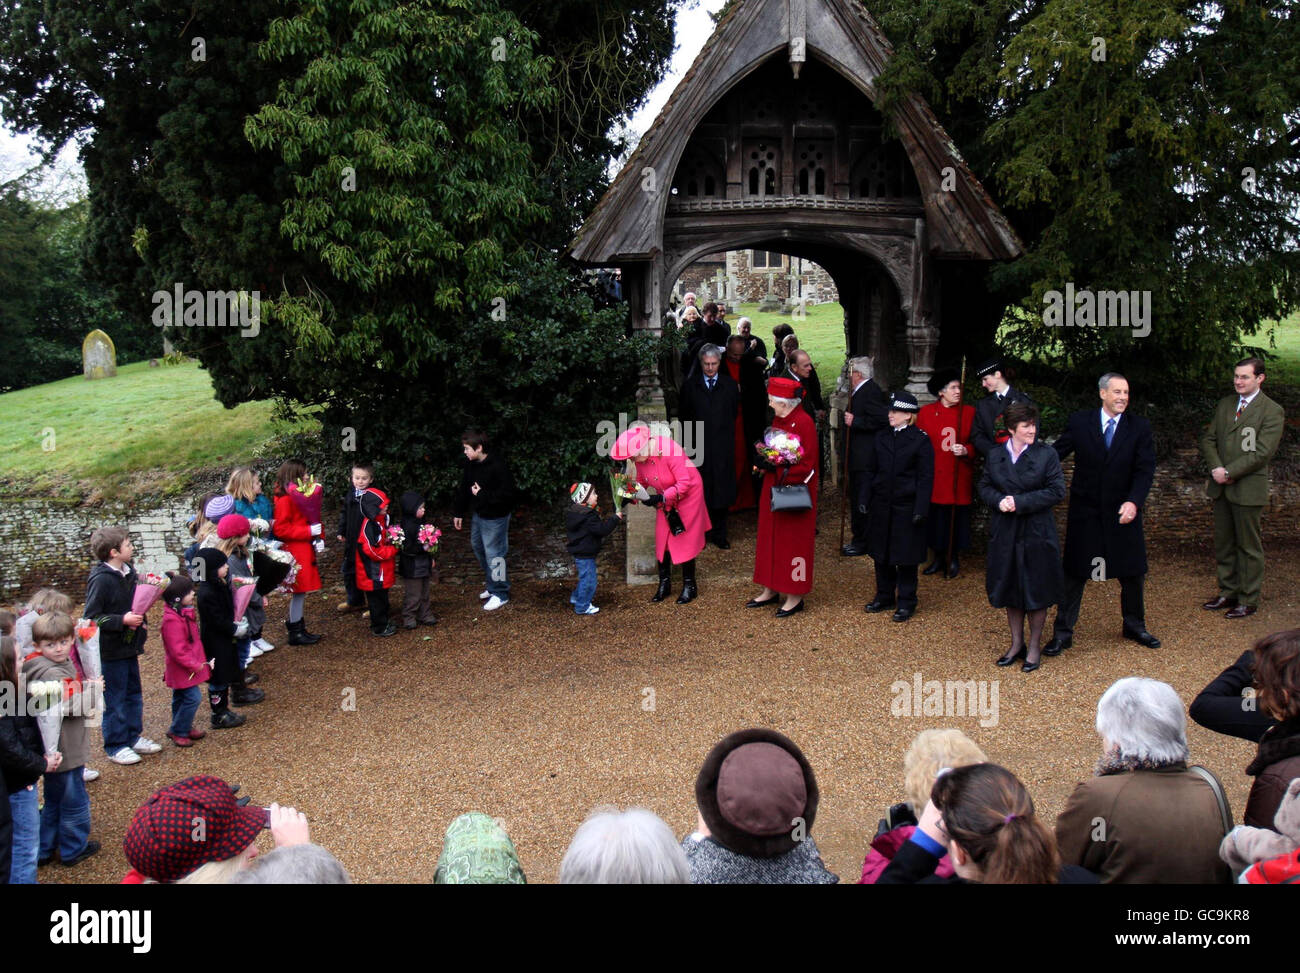 La reine Elizabeth II reçoit des fleurs d'enfants après avoir assisté au service du dimanche à l'église West Newton, près de Sandringham, Norfolk. Banque D'Images